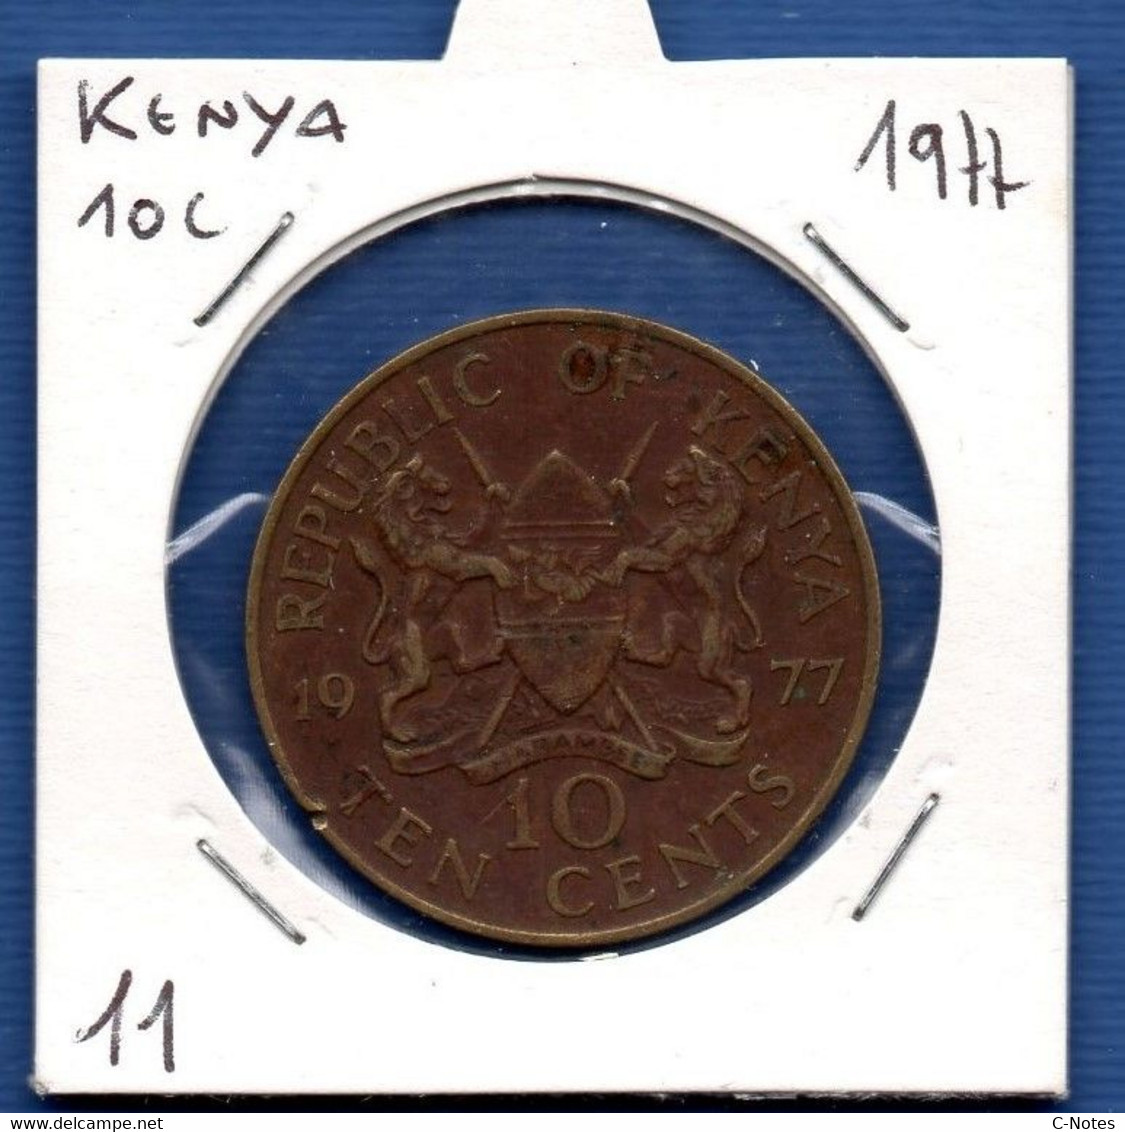 KENYA - 10 Cents 1977 -  See Photos -  Km 11 - Kenya